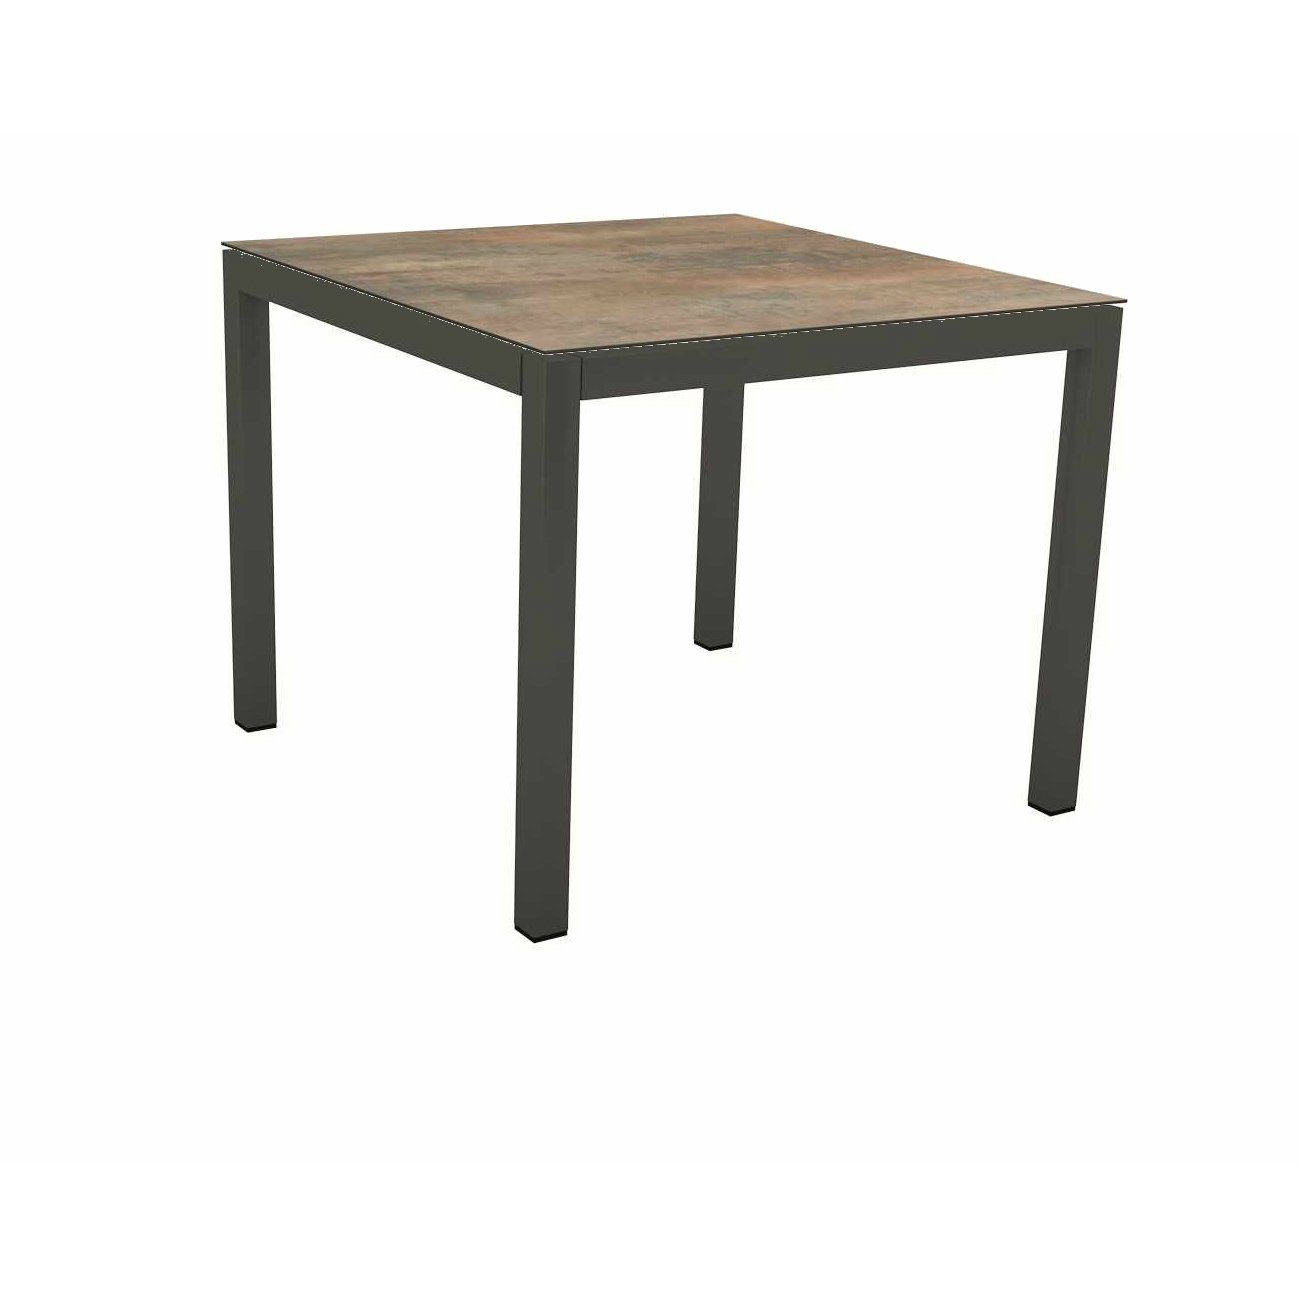 Stern Tischsystem Gartentisch, Gestell Aluminium anthrazit, Tischplatte HPL Ferro, Maße: 90x90 cm